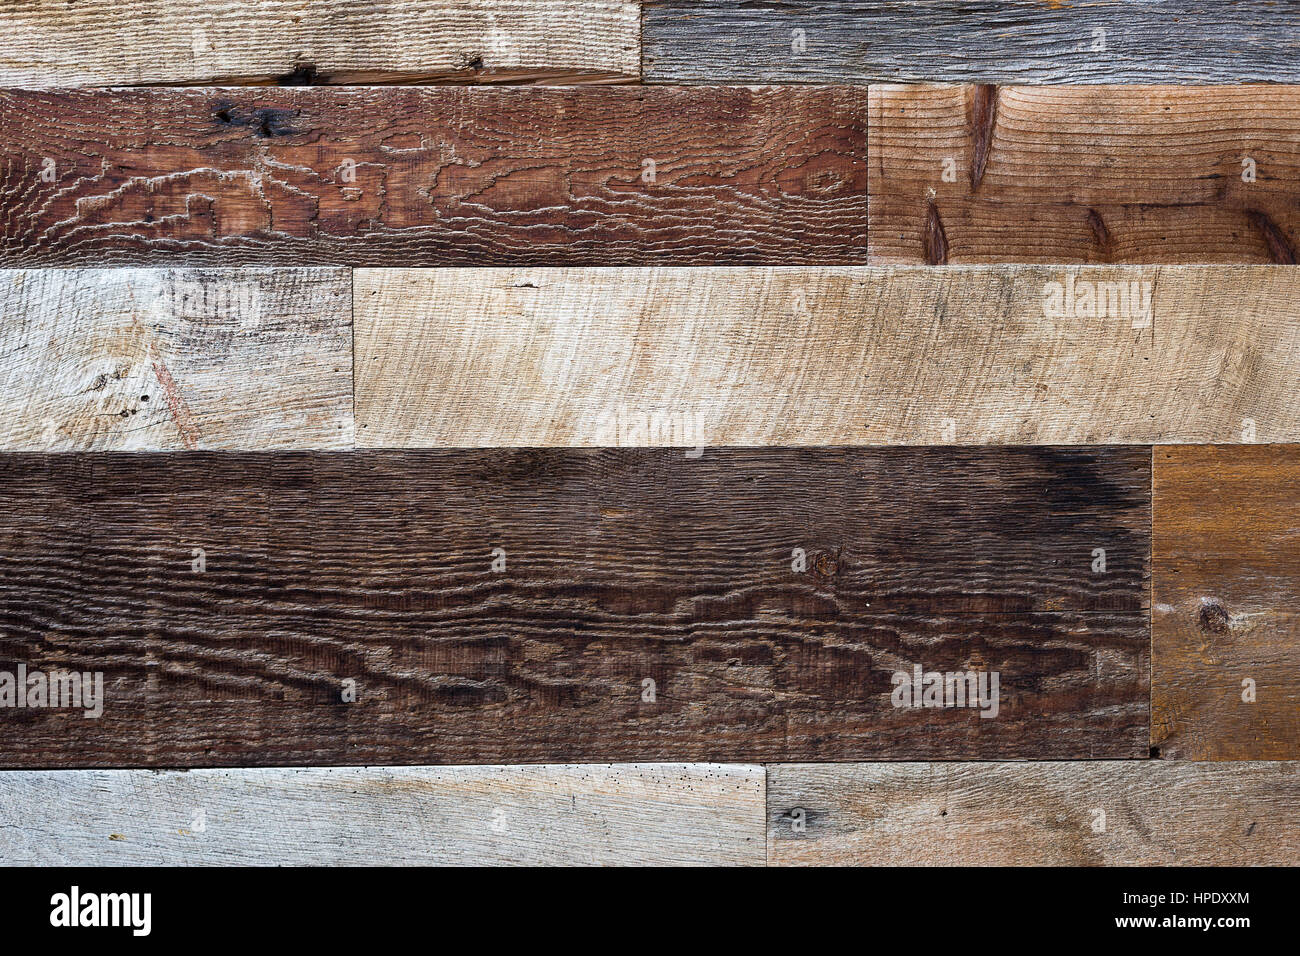 Aged wood background Stock Photo